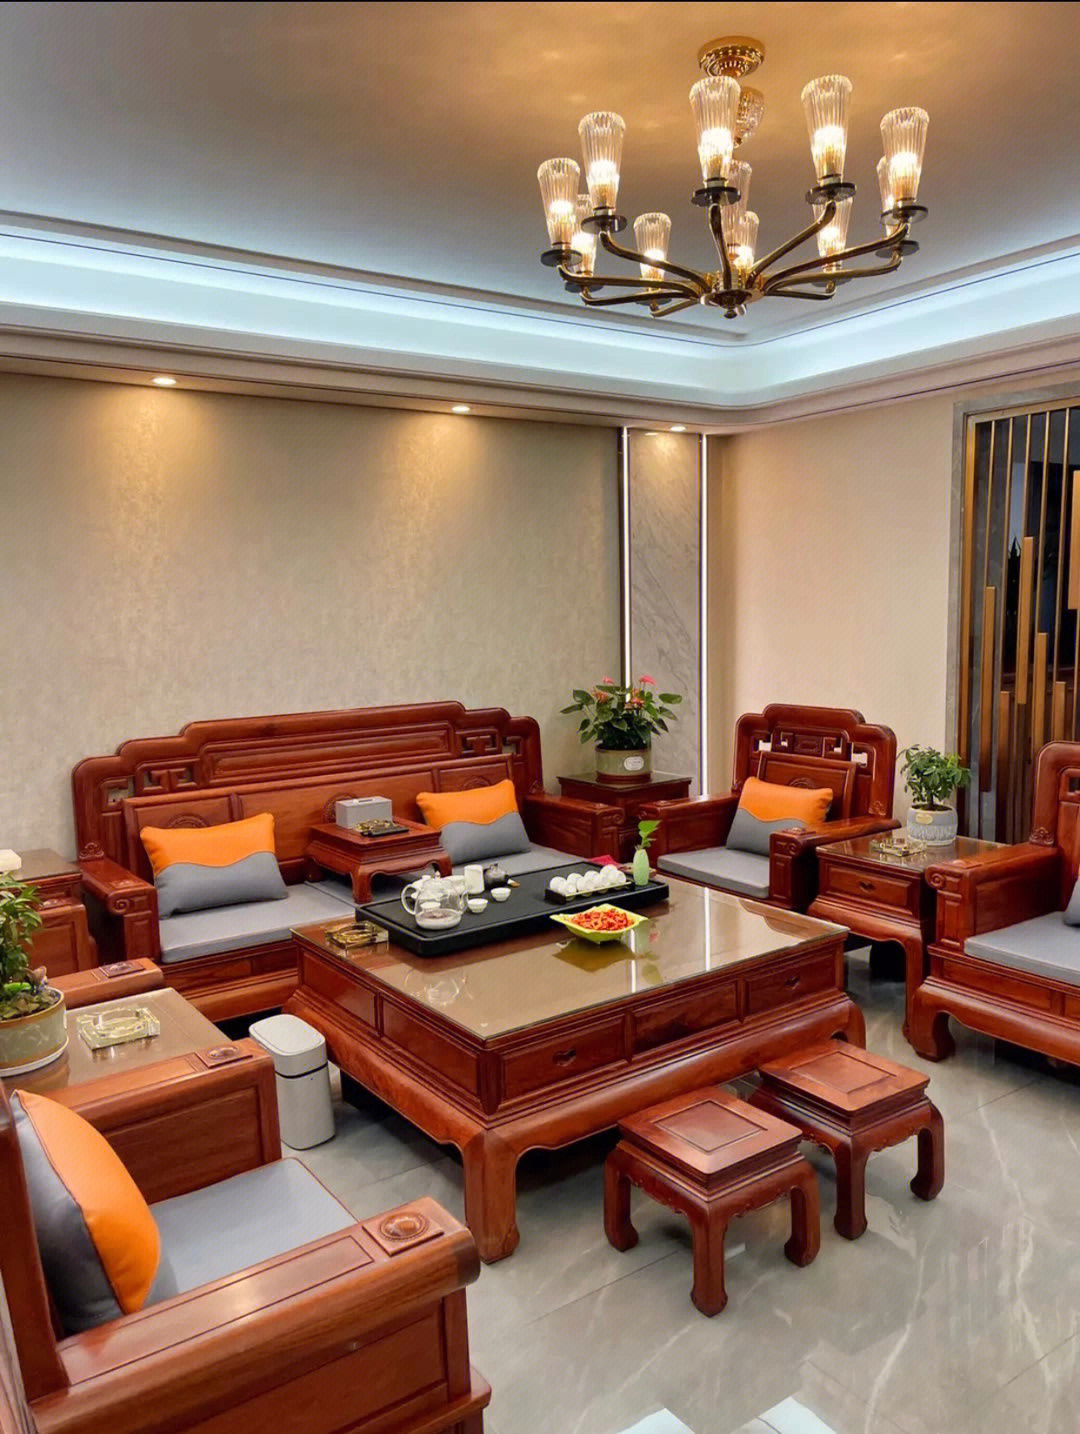 自建房客厅搭配红木沙发尽显融洽之美